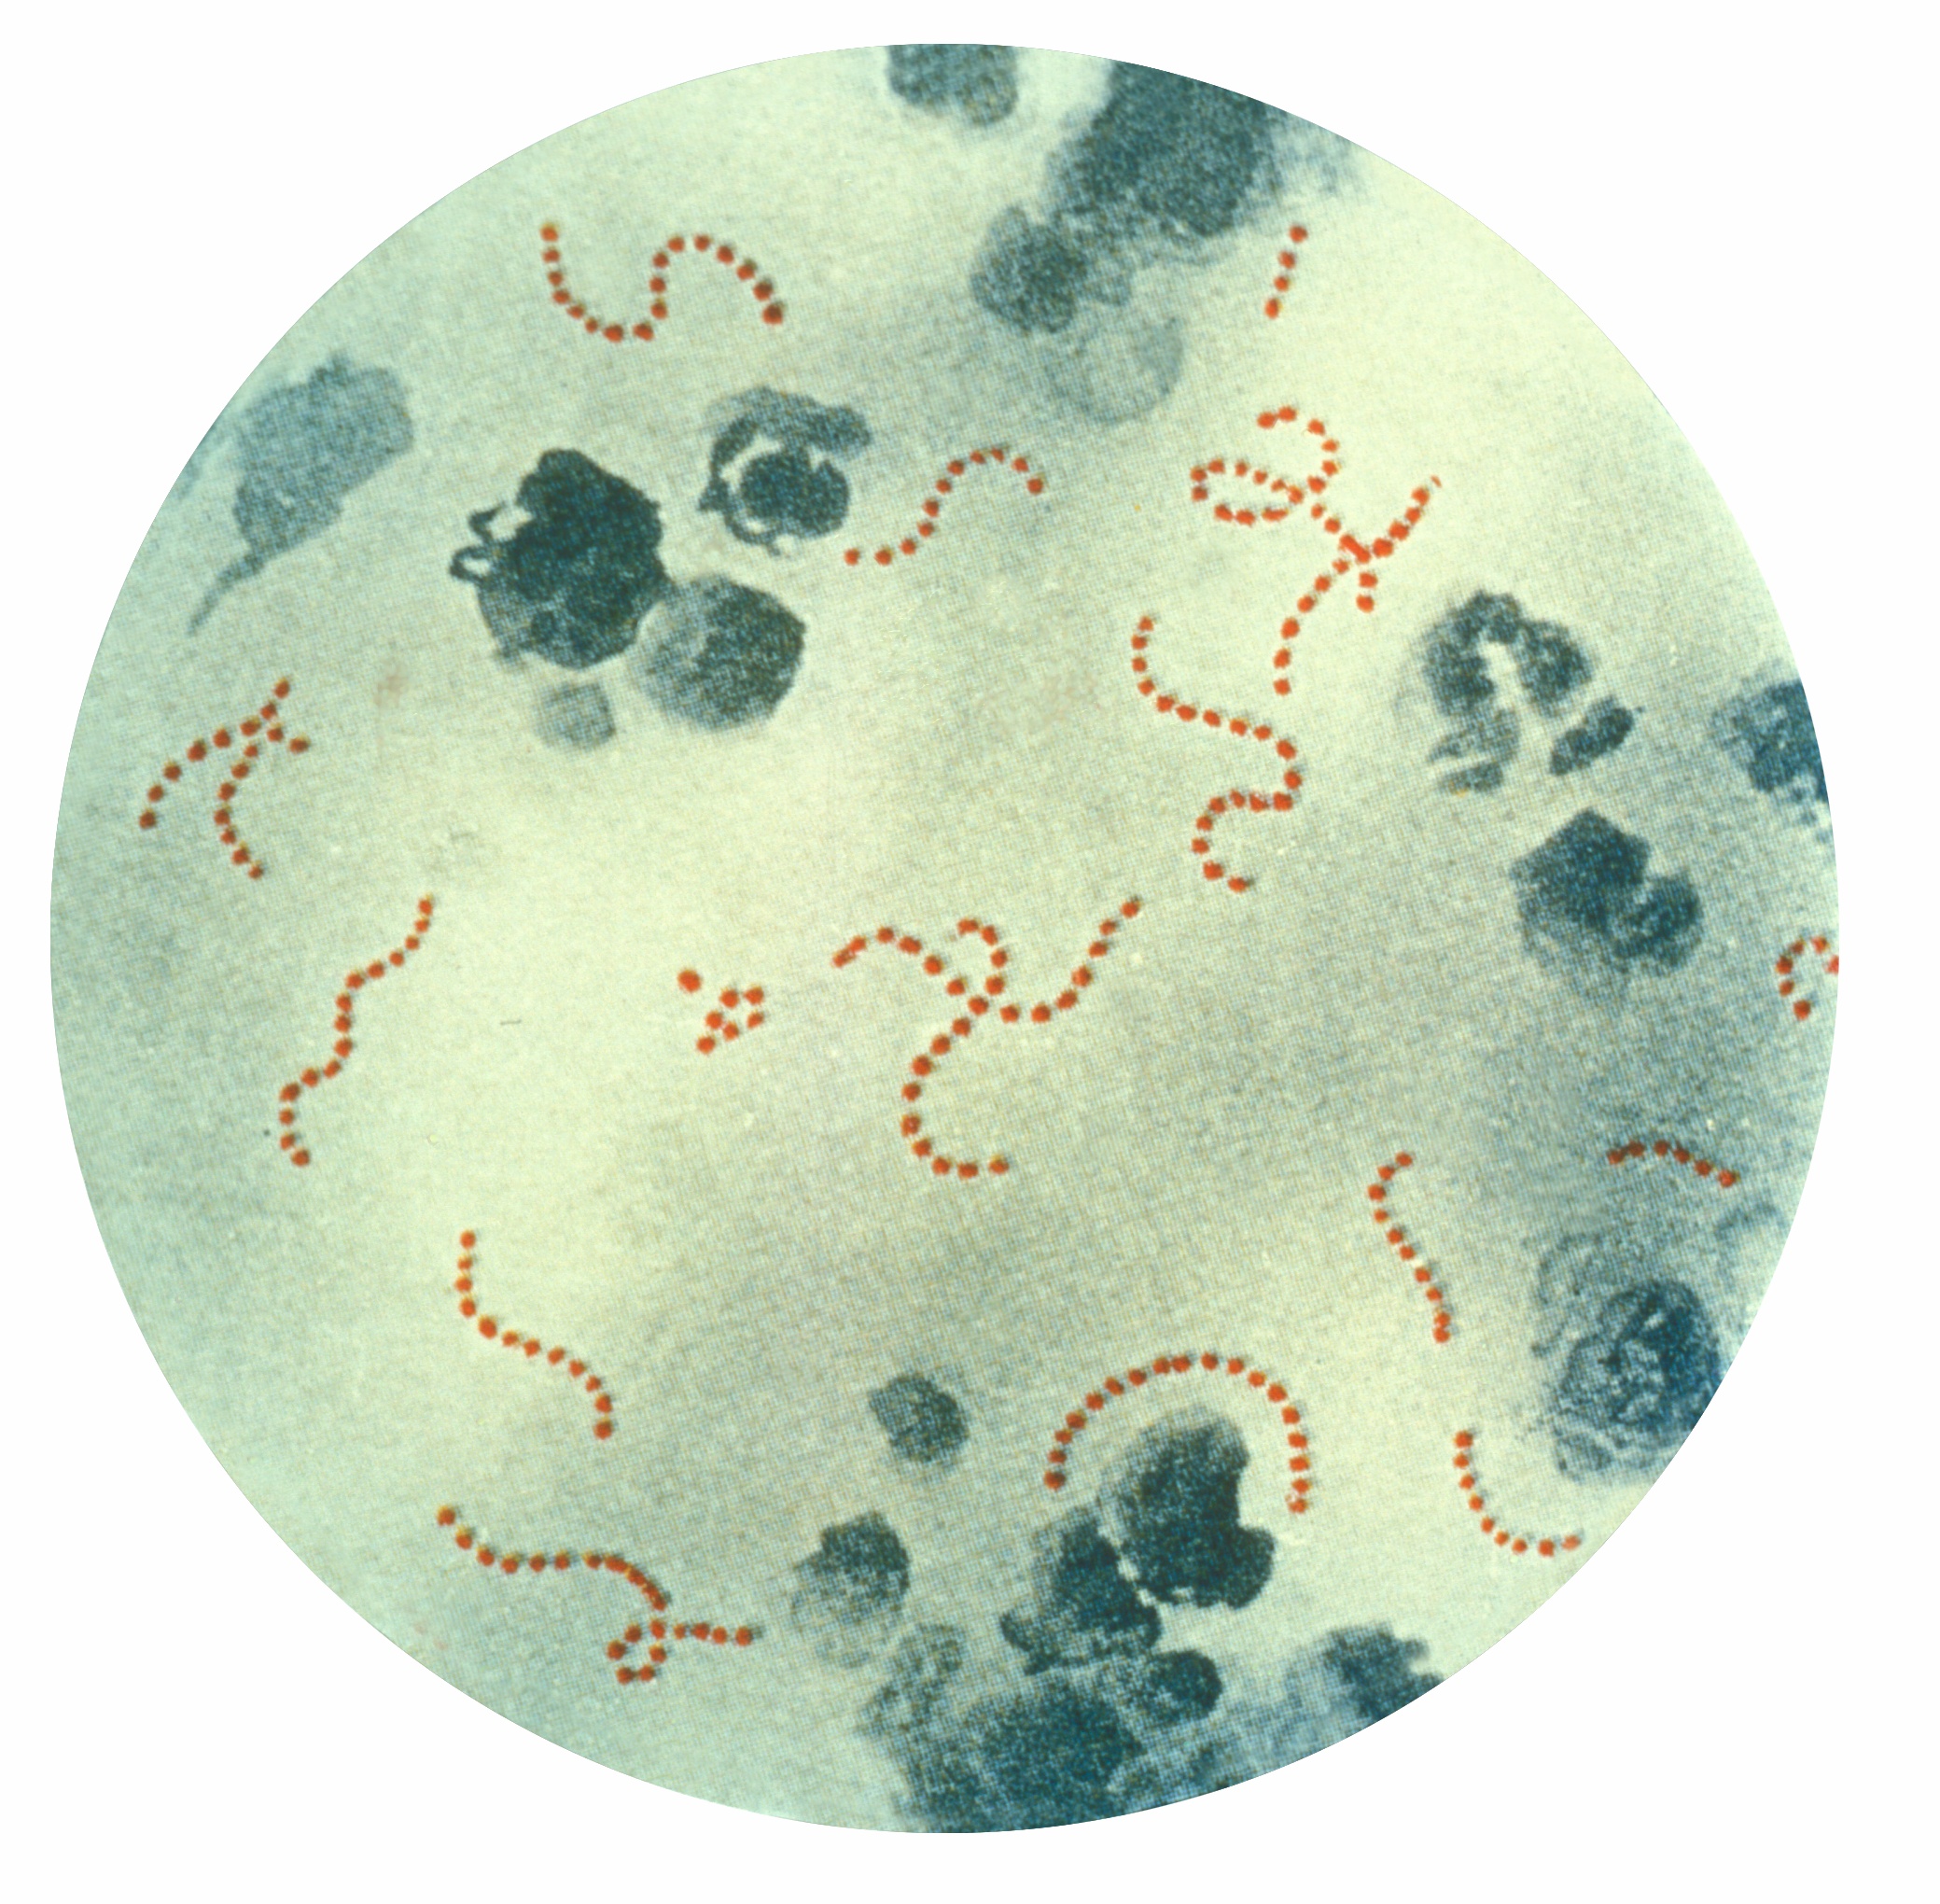 Streptococcus_pyogenes_01.jpg